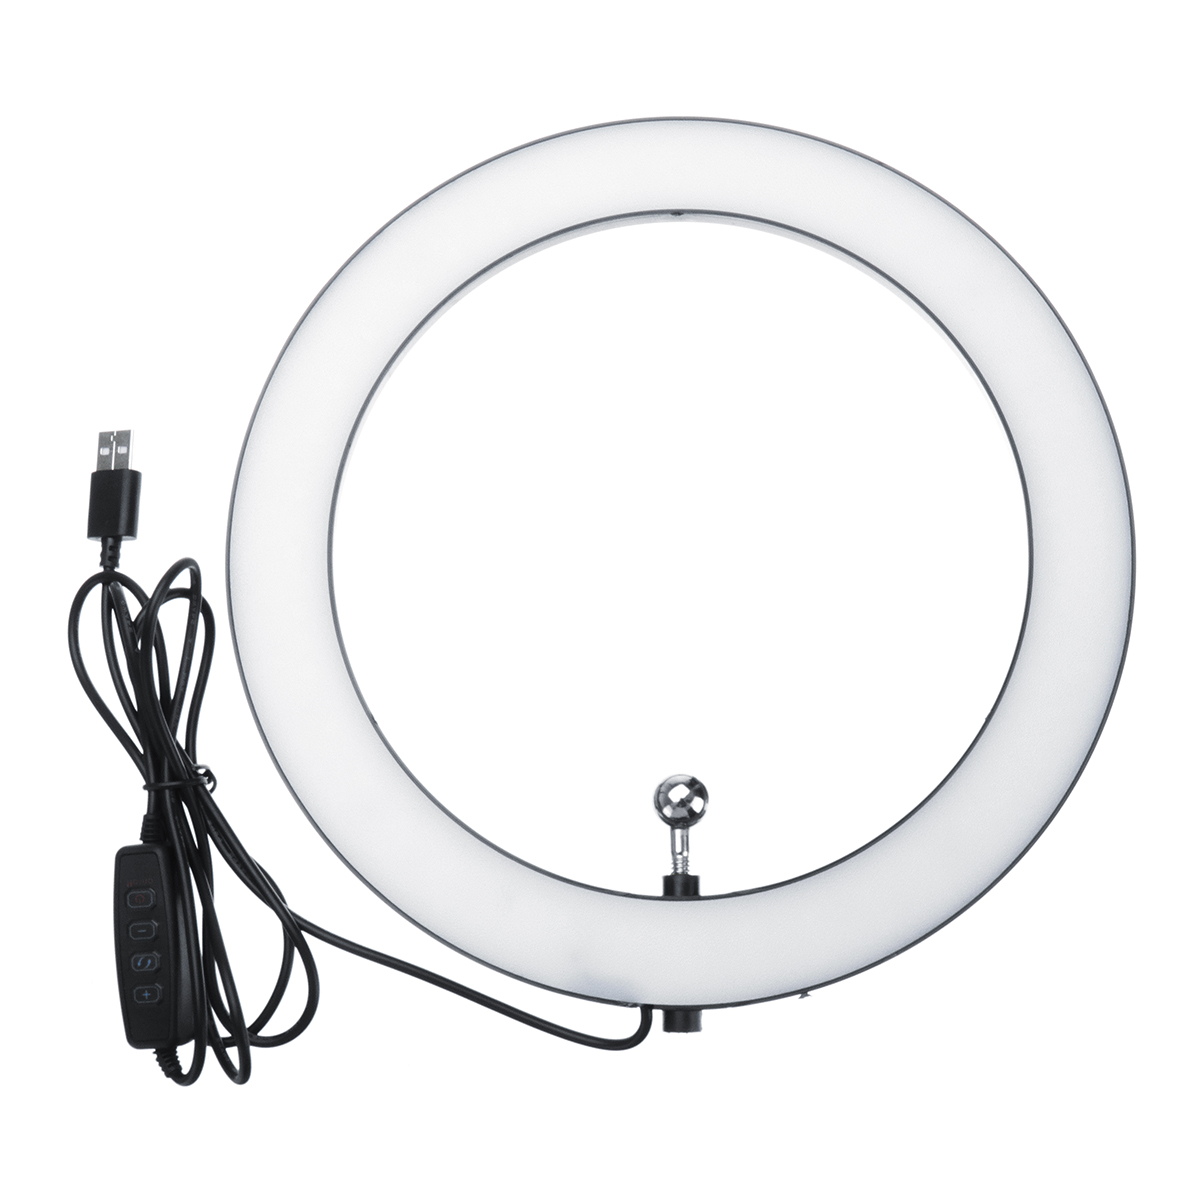 Portable-LED-Ring-Light-Tripod-Stand-Live-Selfie-Holder-USB-Plug-10-Inch-Fill-Light-for-YouTube-Tikt-1431335-10